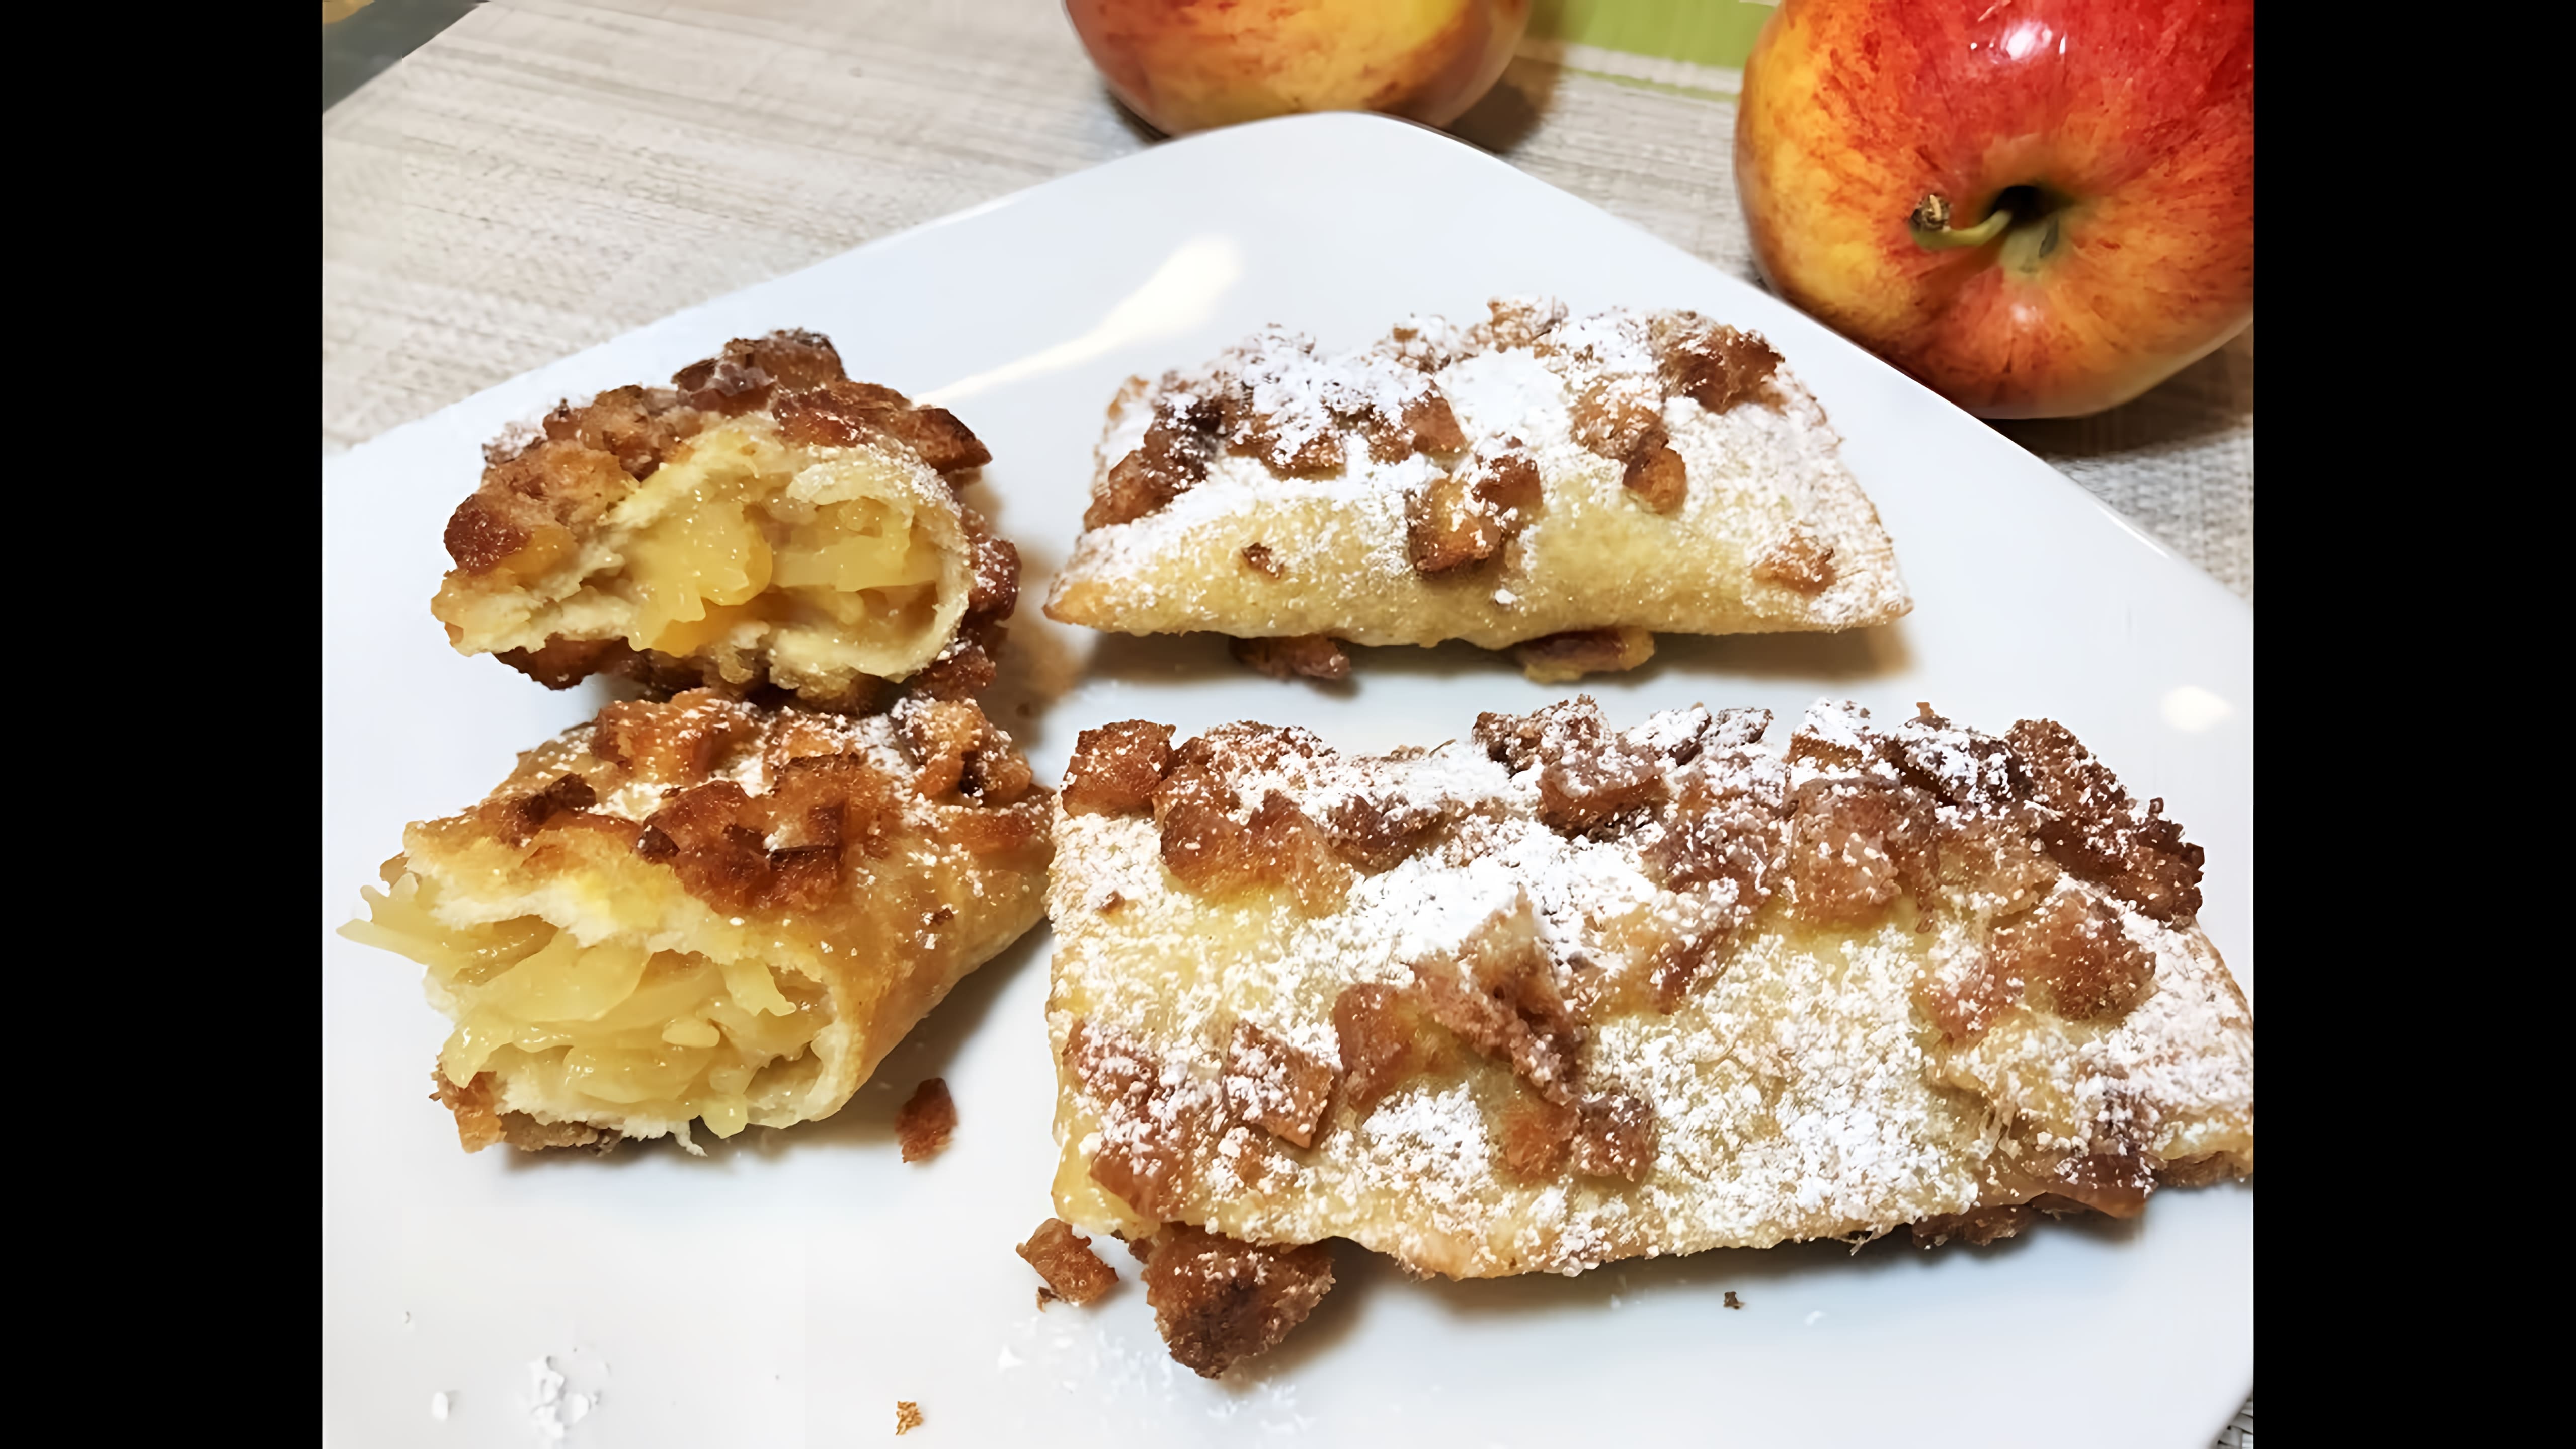 Видео: ПУШАРИКИ с Яблоками.  Вкусная Идея для Завтрака.  Ленивые Пирожки. Pies With Apples